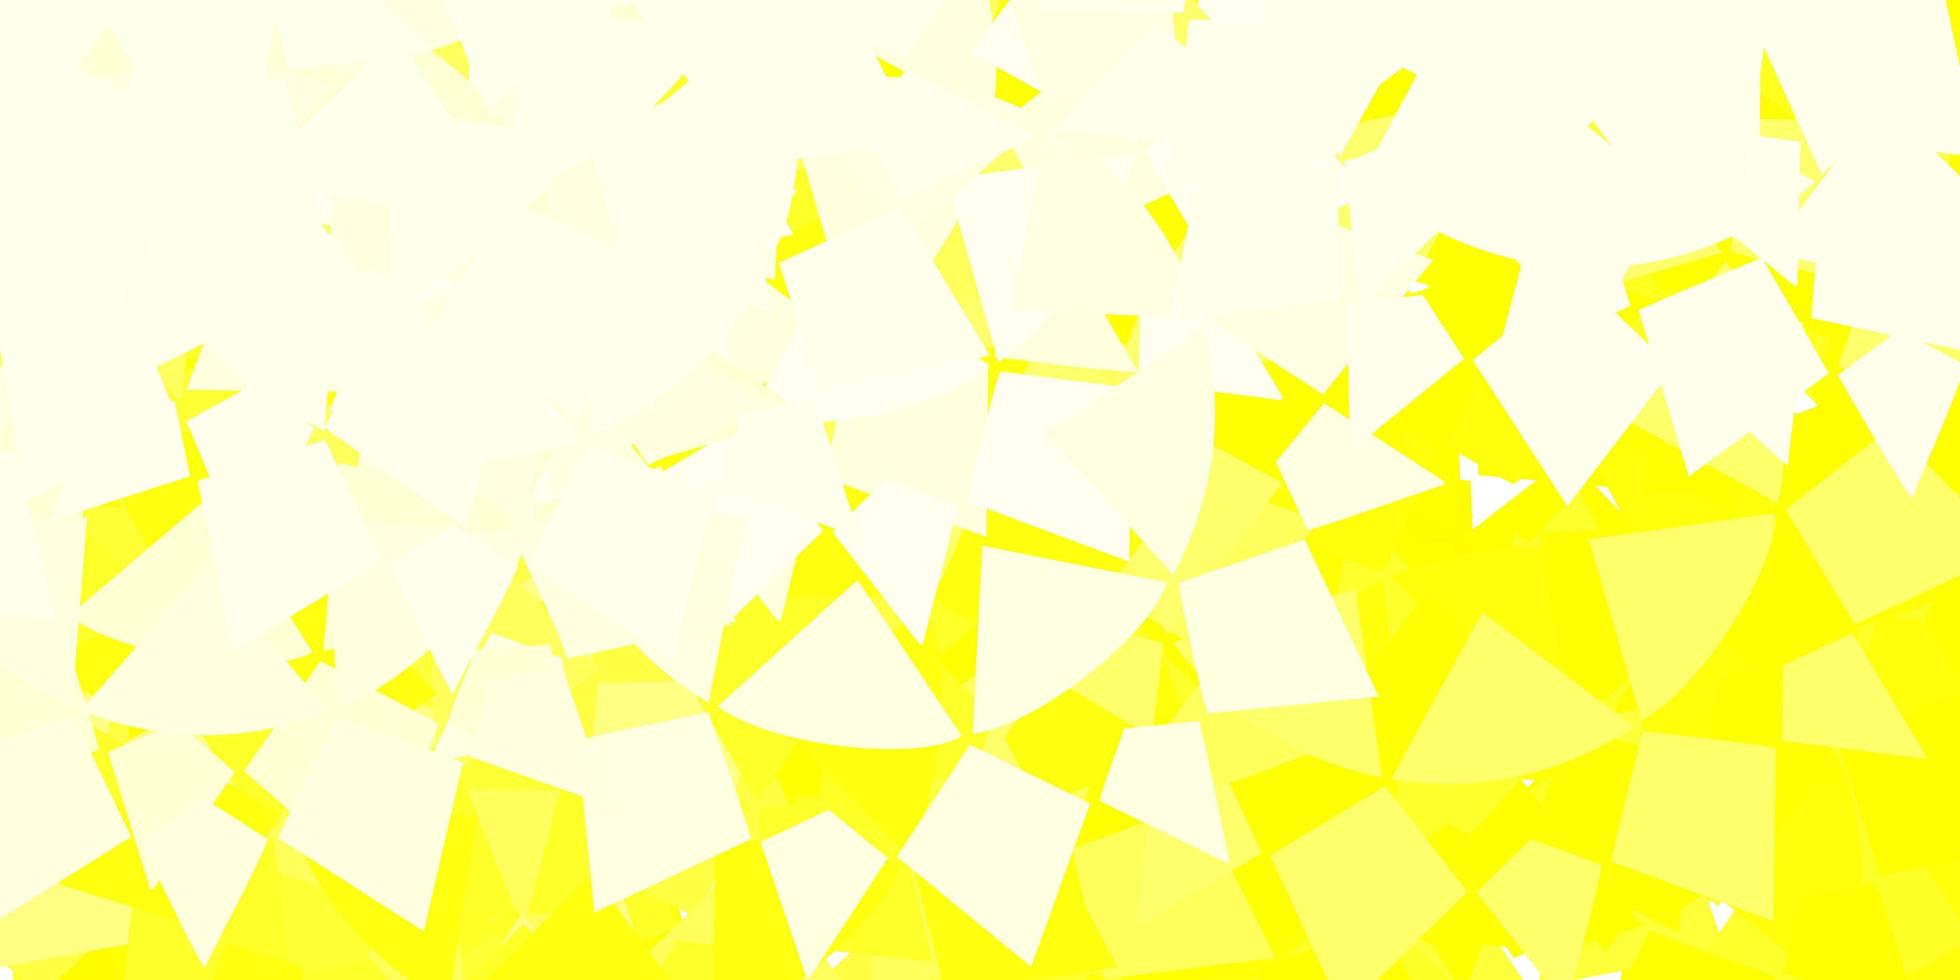 trama vettoriale giallo chiaro con triangoli casuali.